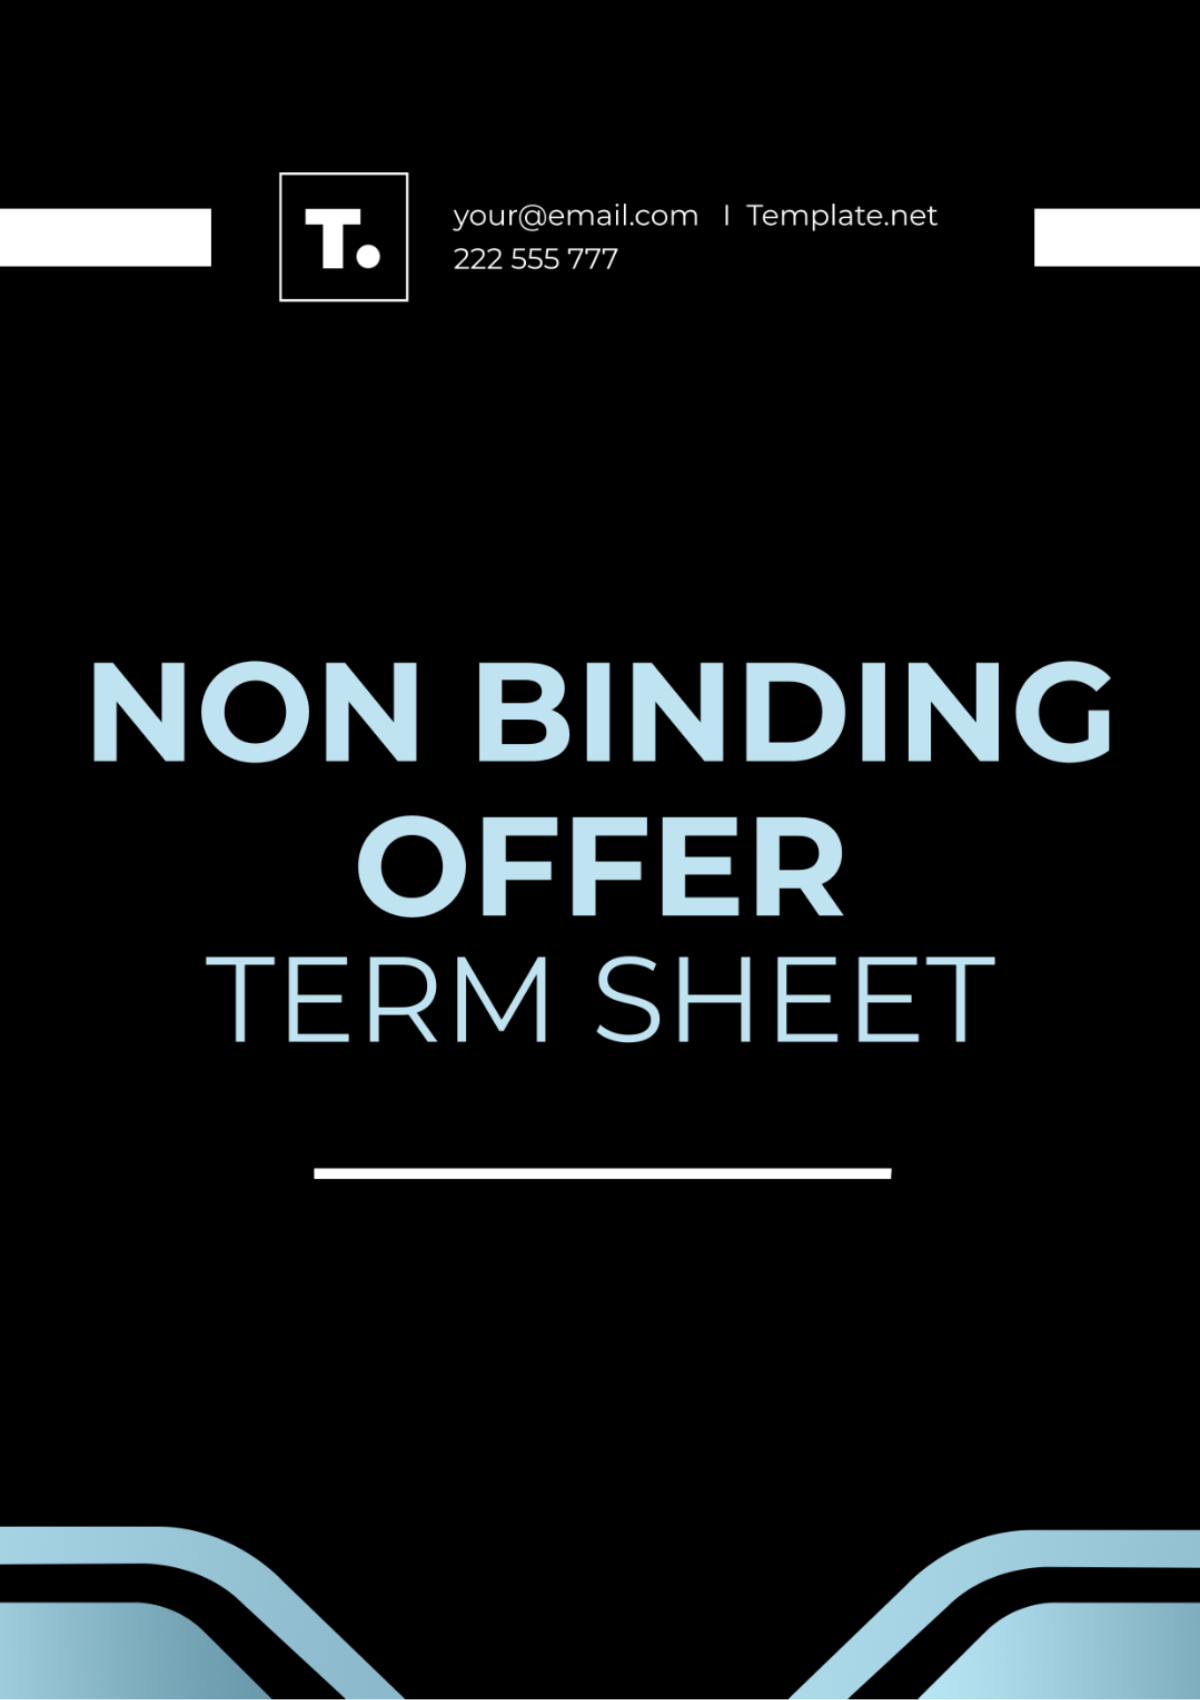 Non Binding Offer Term Sheet Template